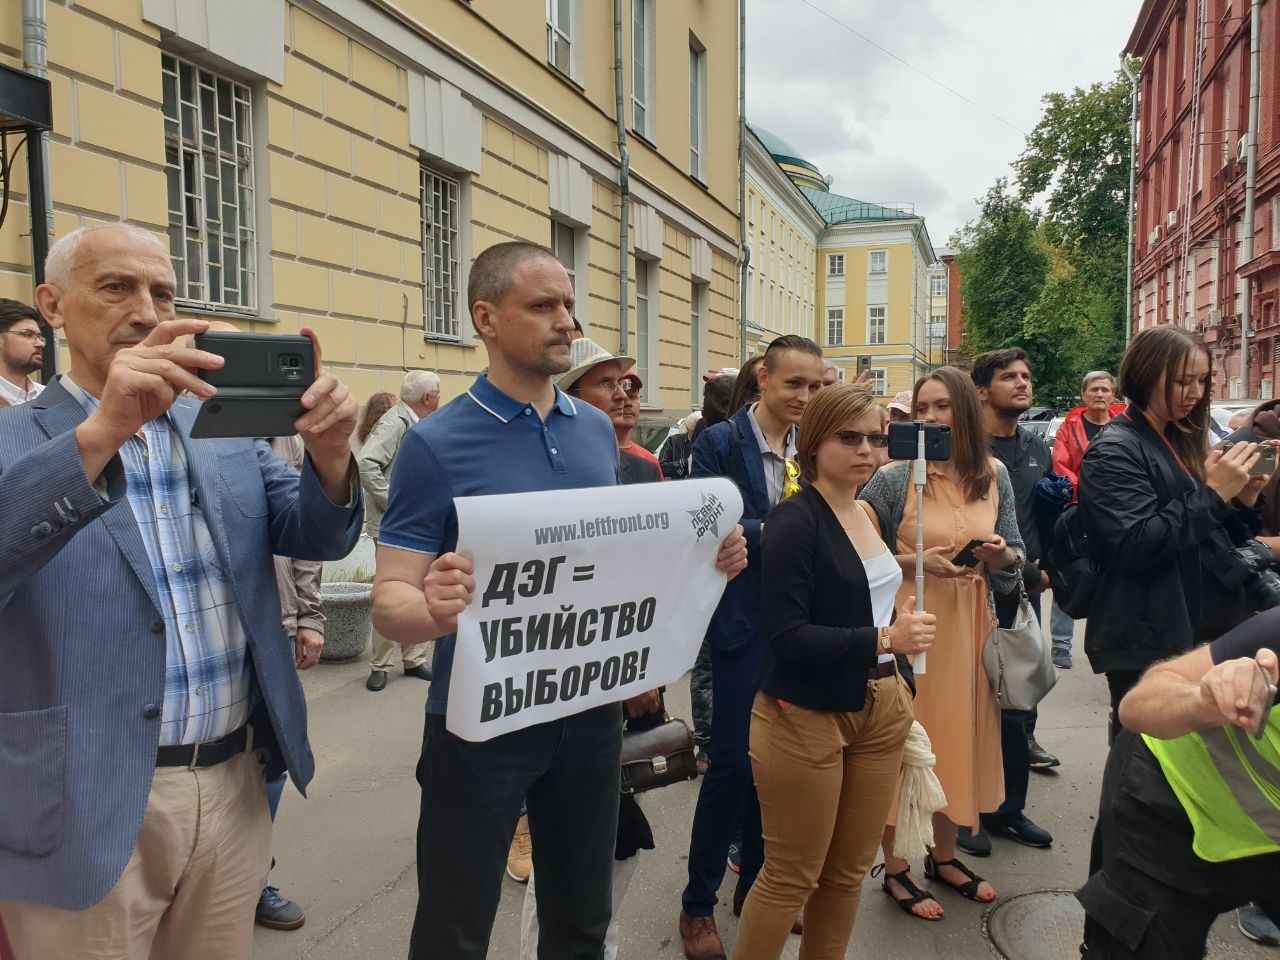 Участники акции левых сил возле Мосгоризбиркома потребовали отменить ДЭГ и приравнять фальсификации на выборах к измене Родине